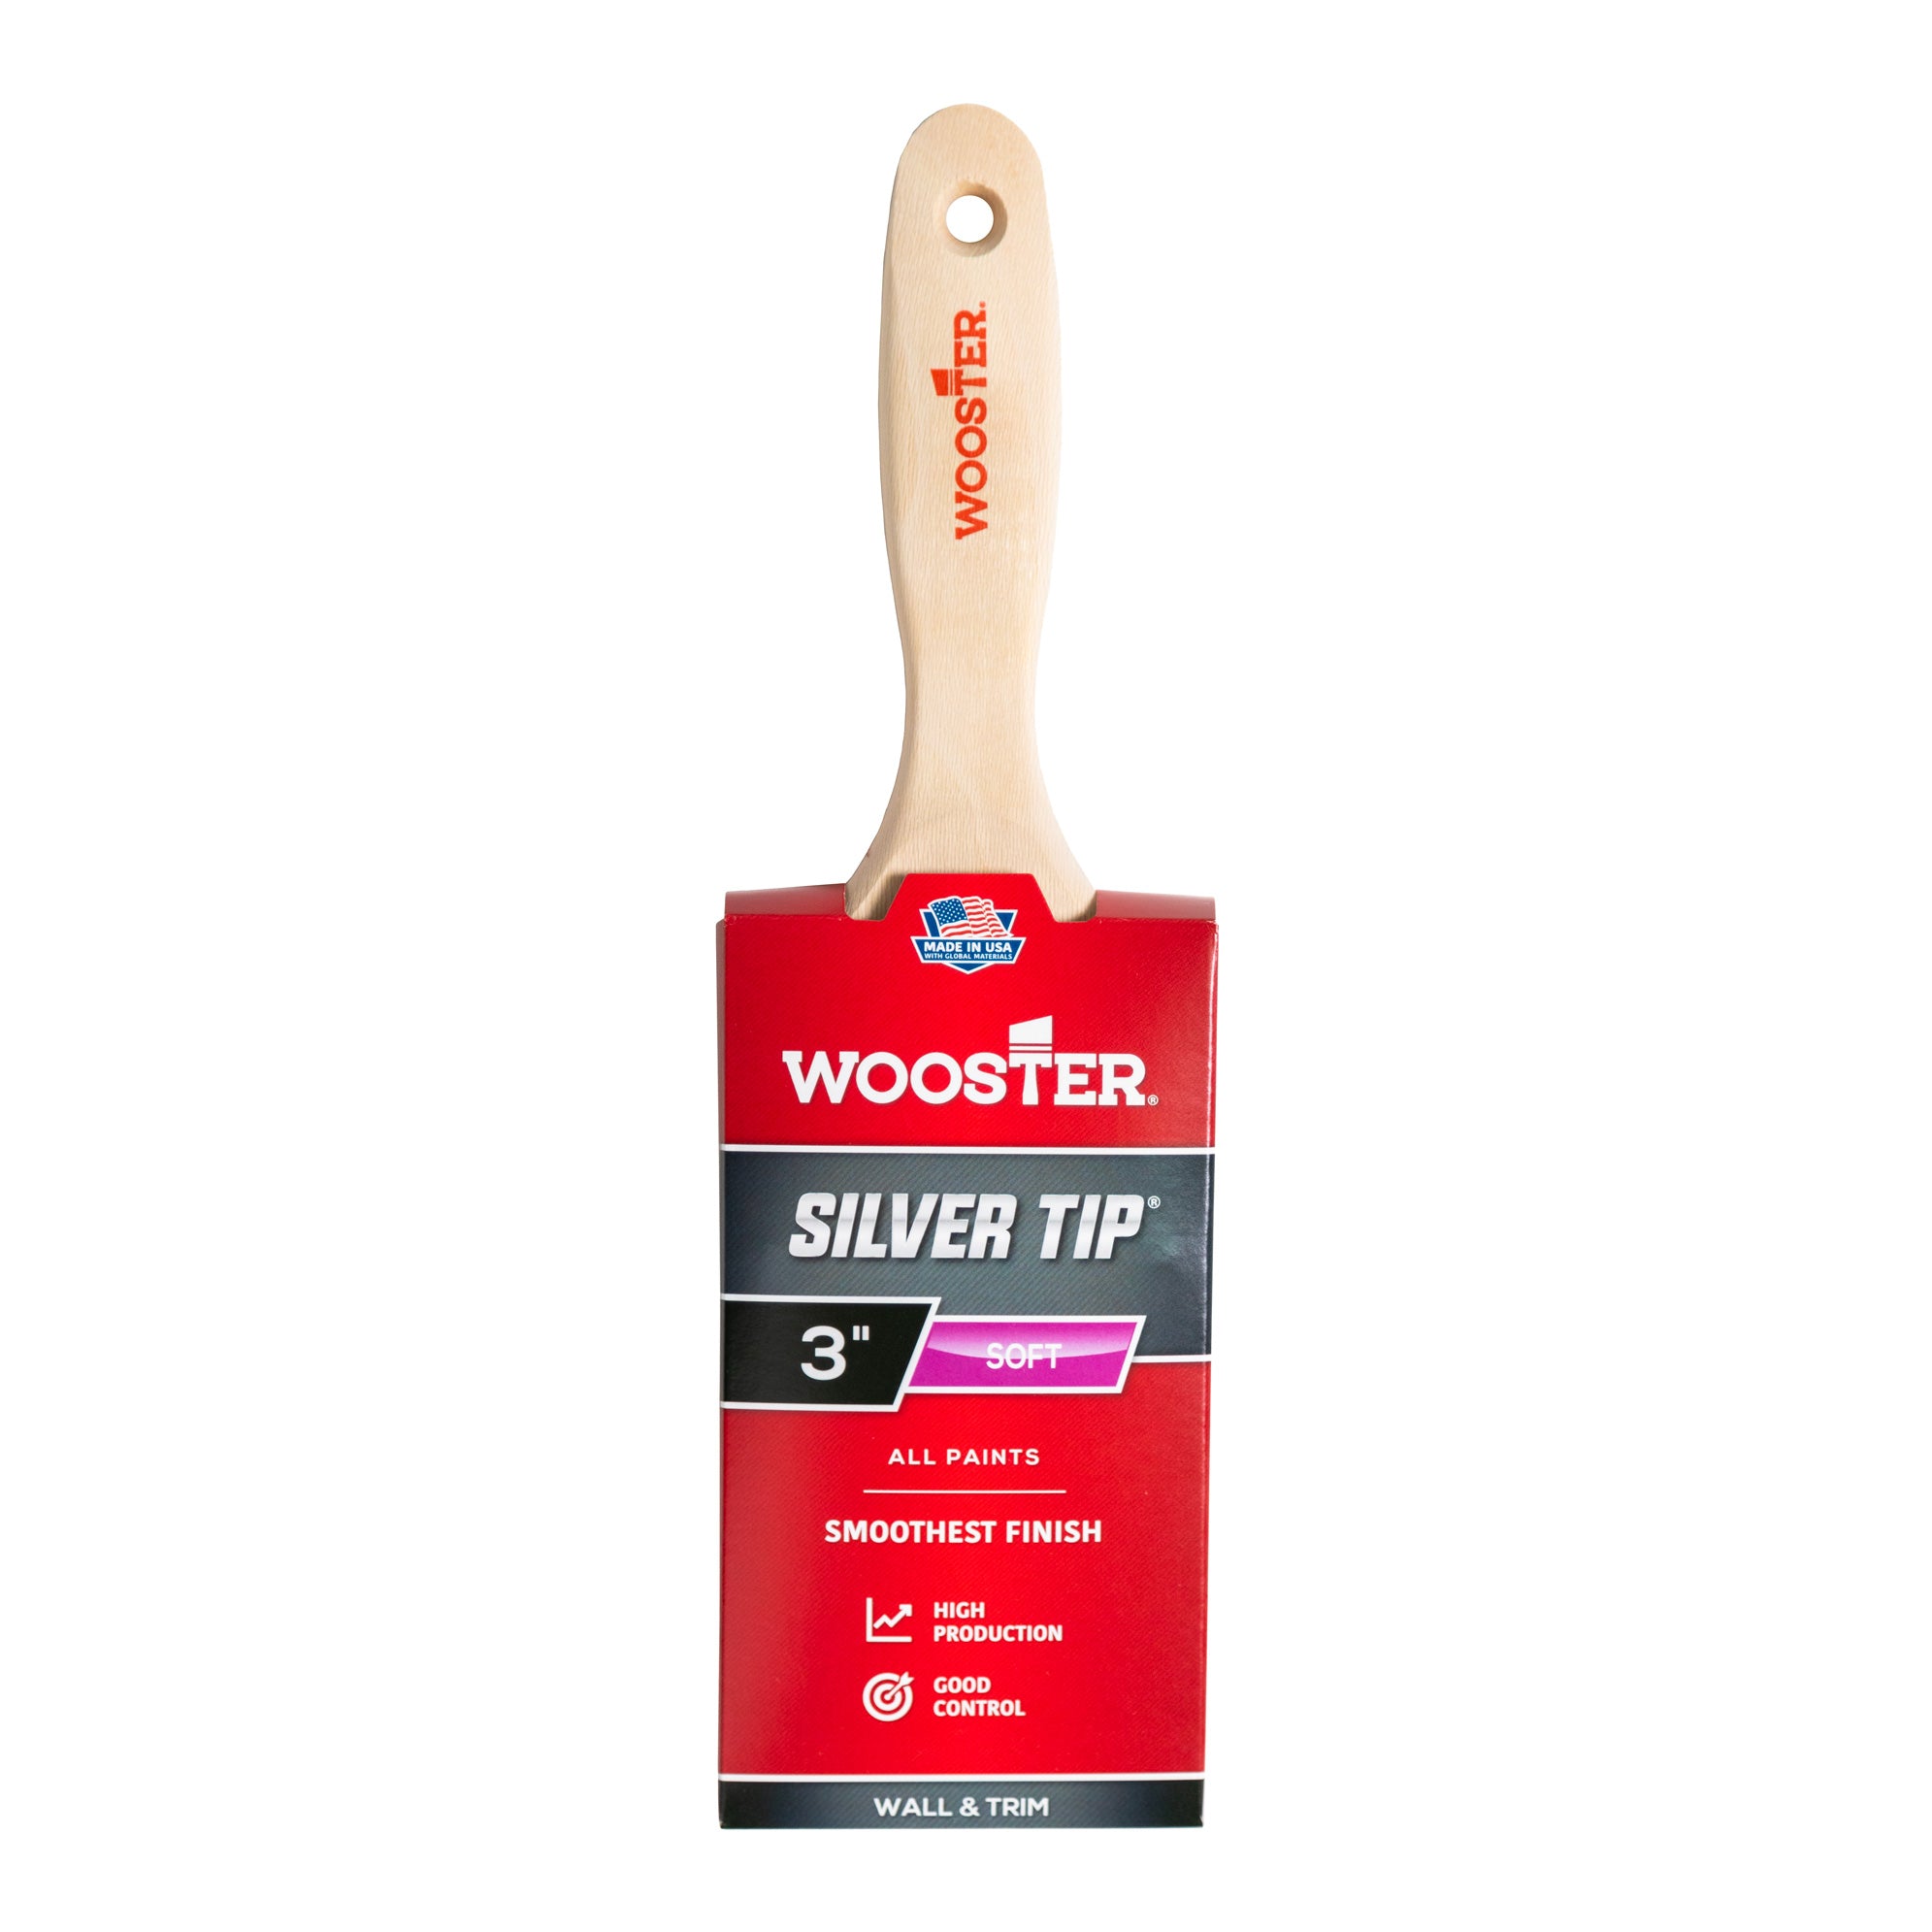 Wooster Silver Tip Brush / Flat Sash